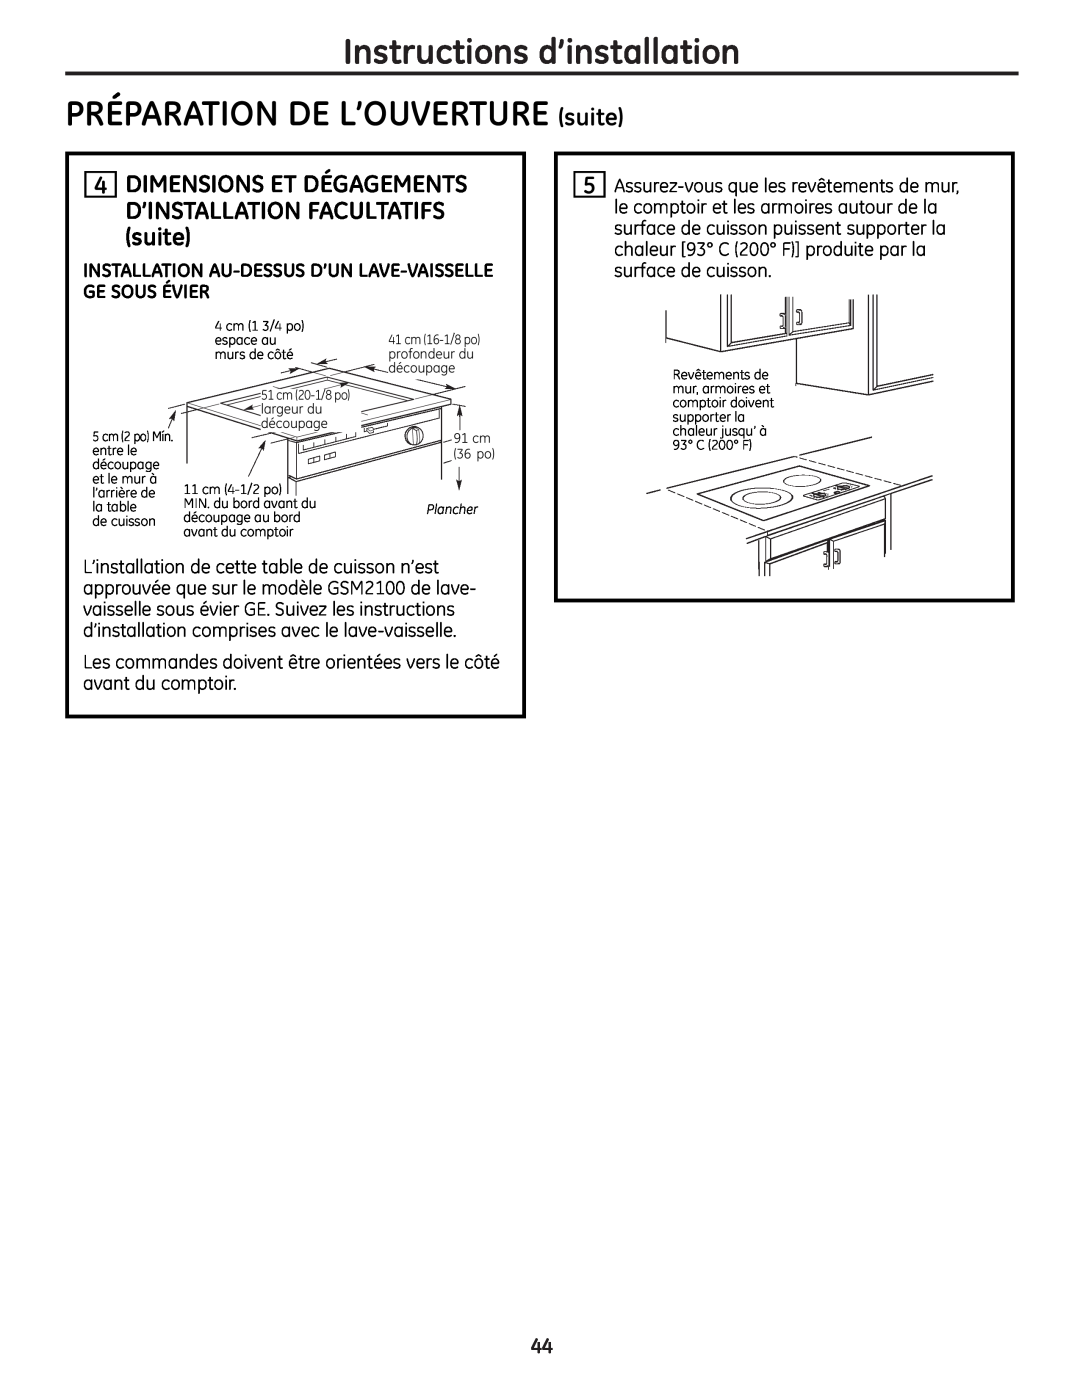 GE JP256 installation instructions Instructions d’installation PRÉPARATION DE L’OUVERTURE suite, Plancher 